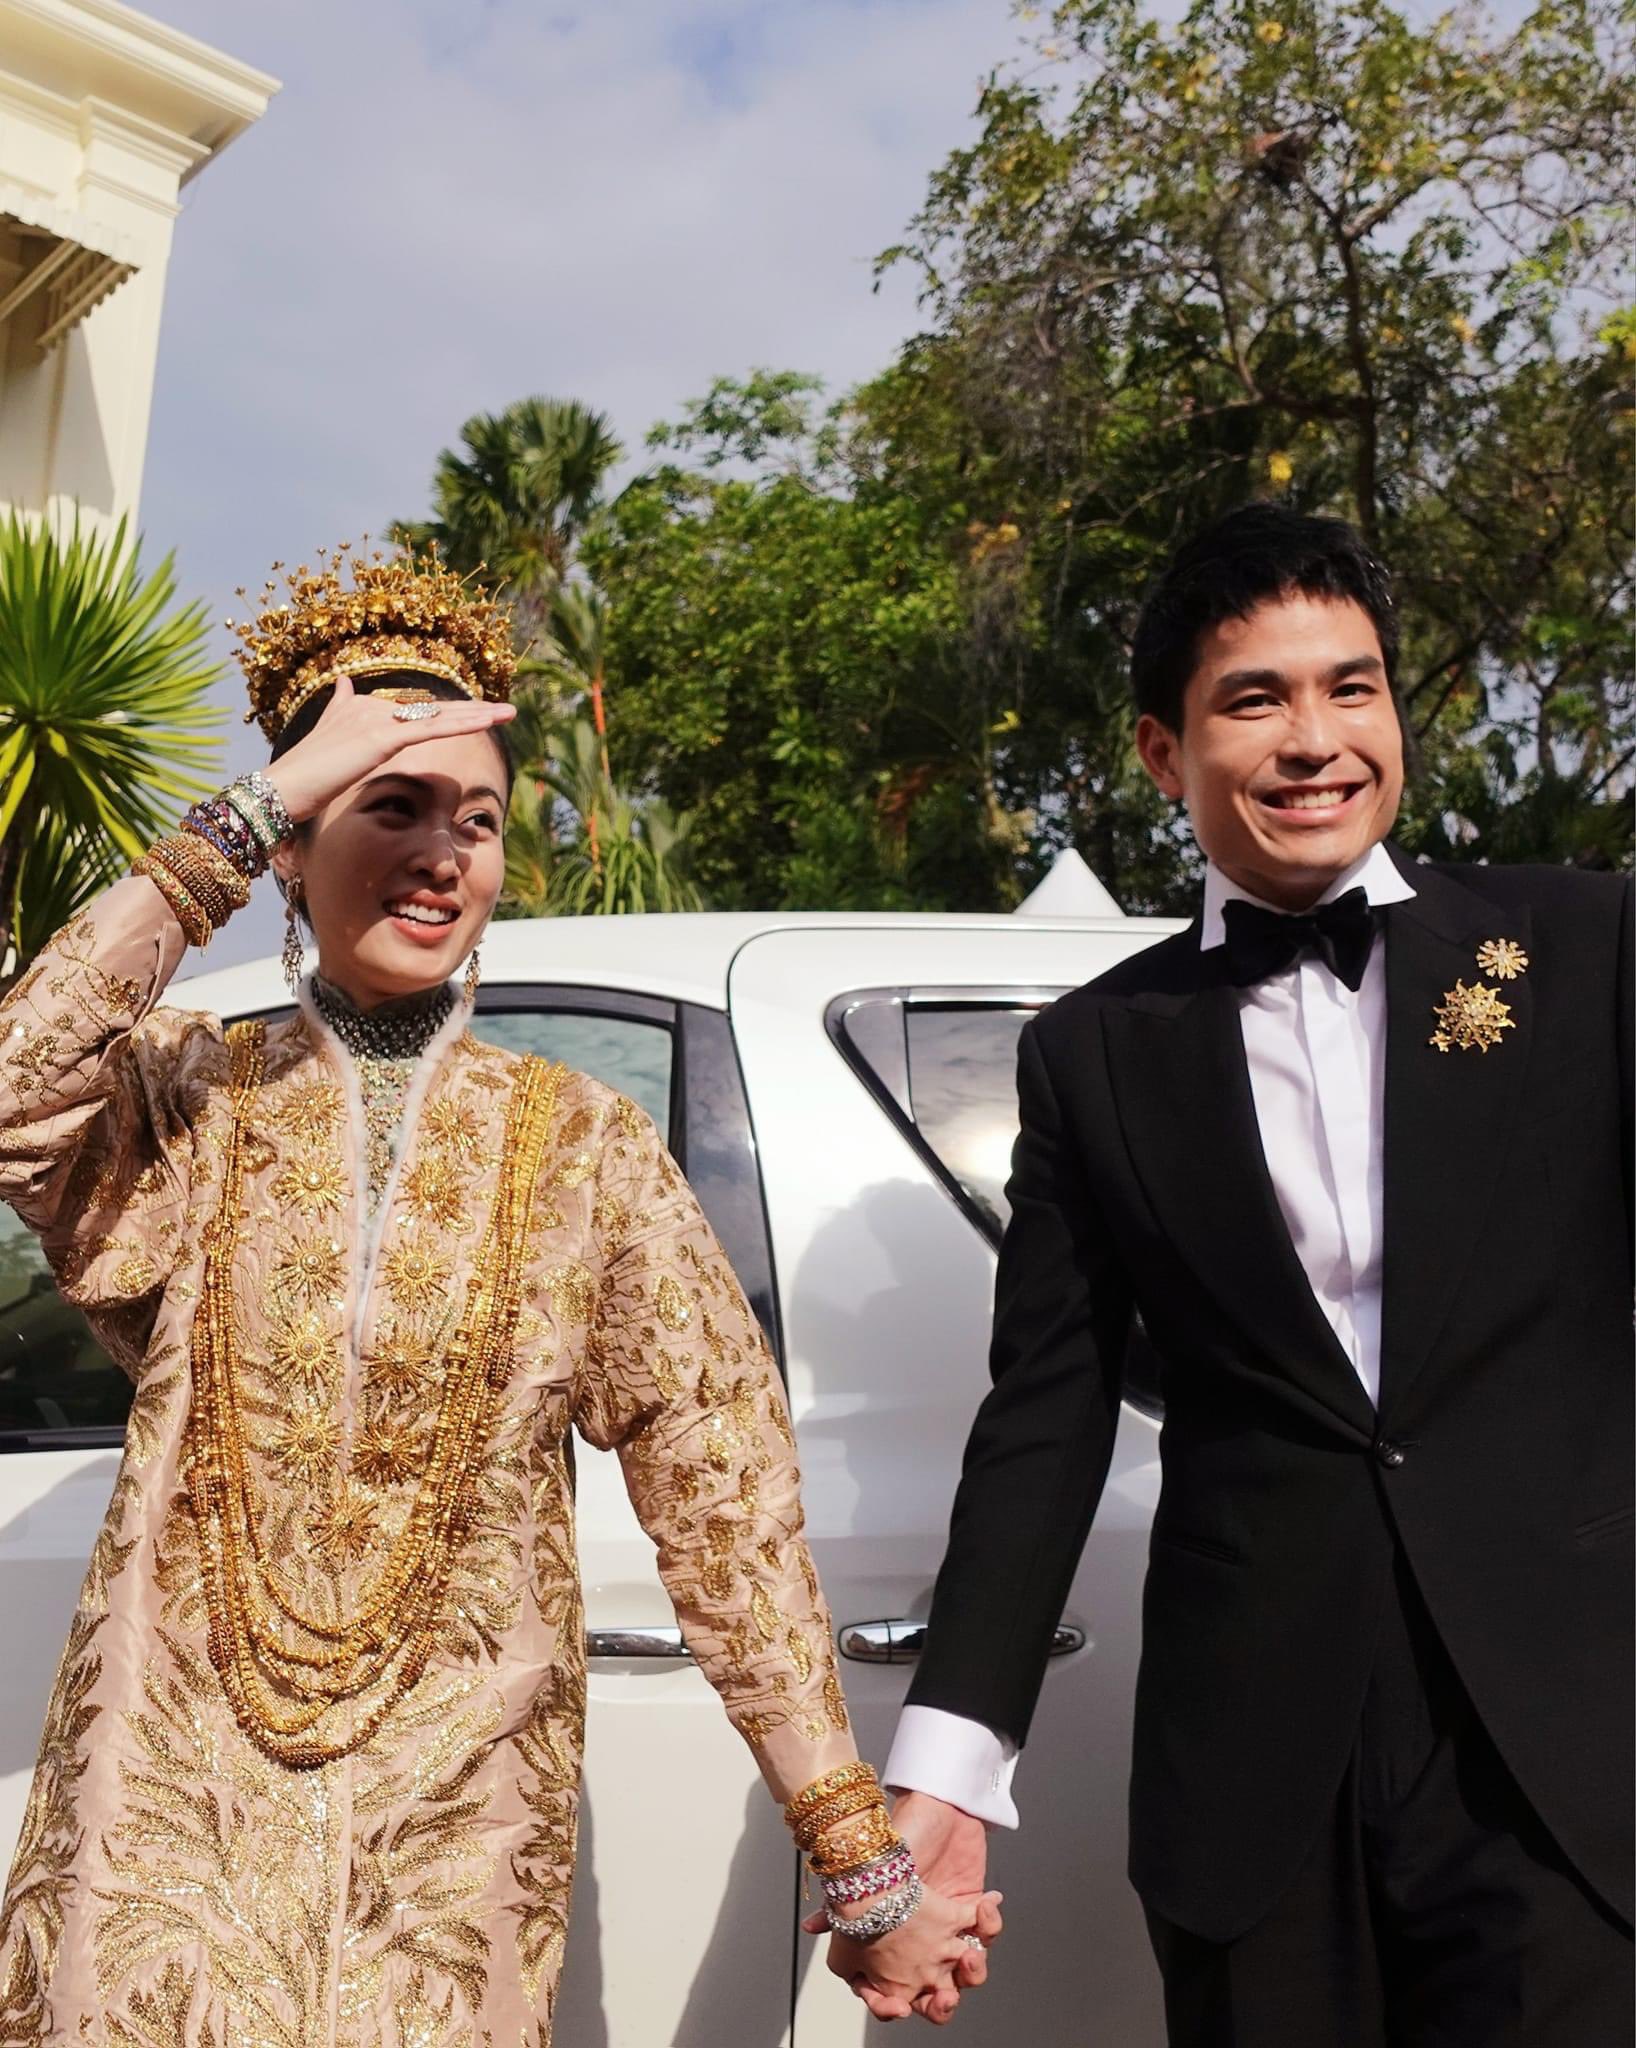 Đám cưới trong mơ của 'mỹ nhân chuyển giới đẹp nhất Thái Lan' Nong Poy: Cô dâu đội vương miện bằng vàng hạnh phúc cùng chú rể bước vào hôn lễ - Ảnh 7.